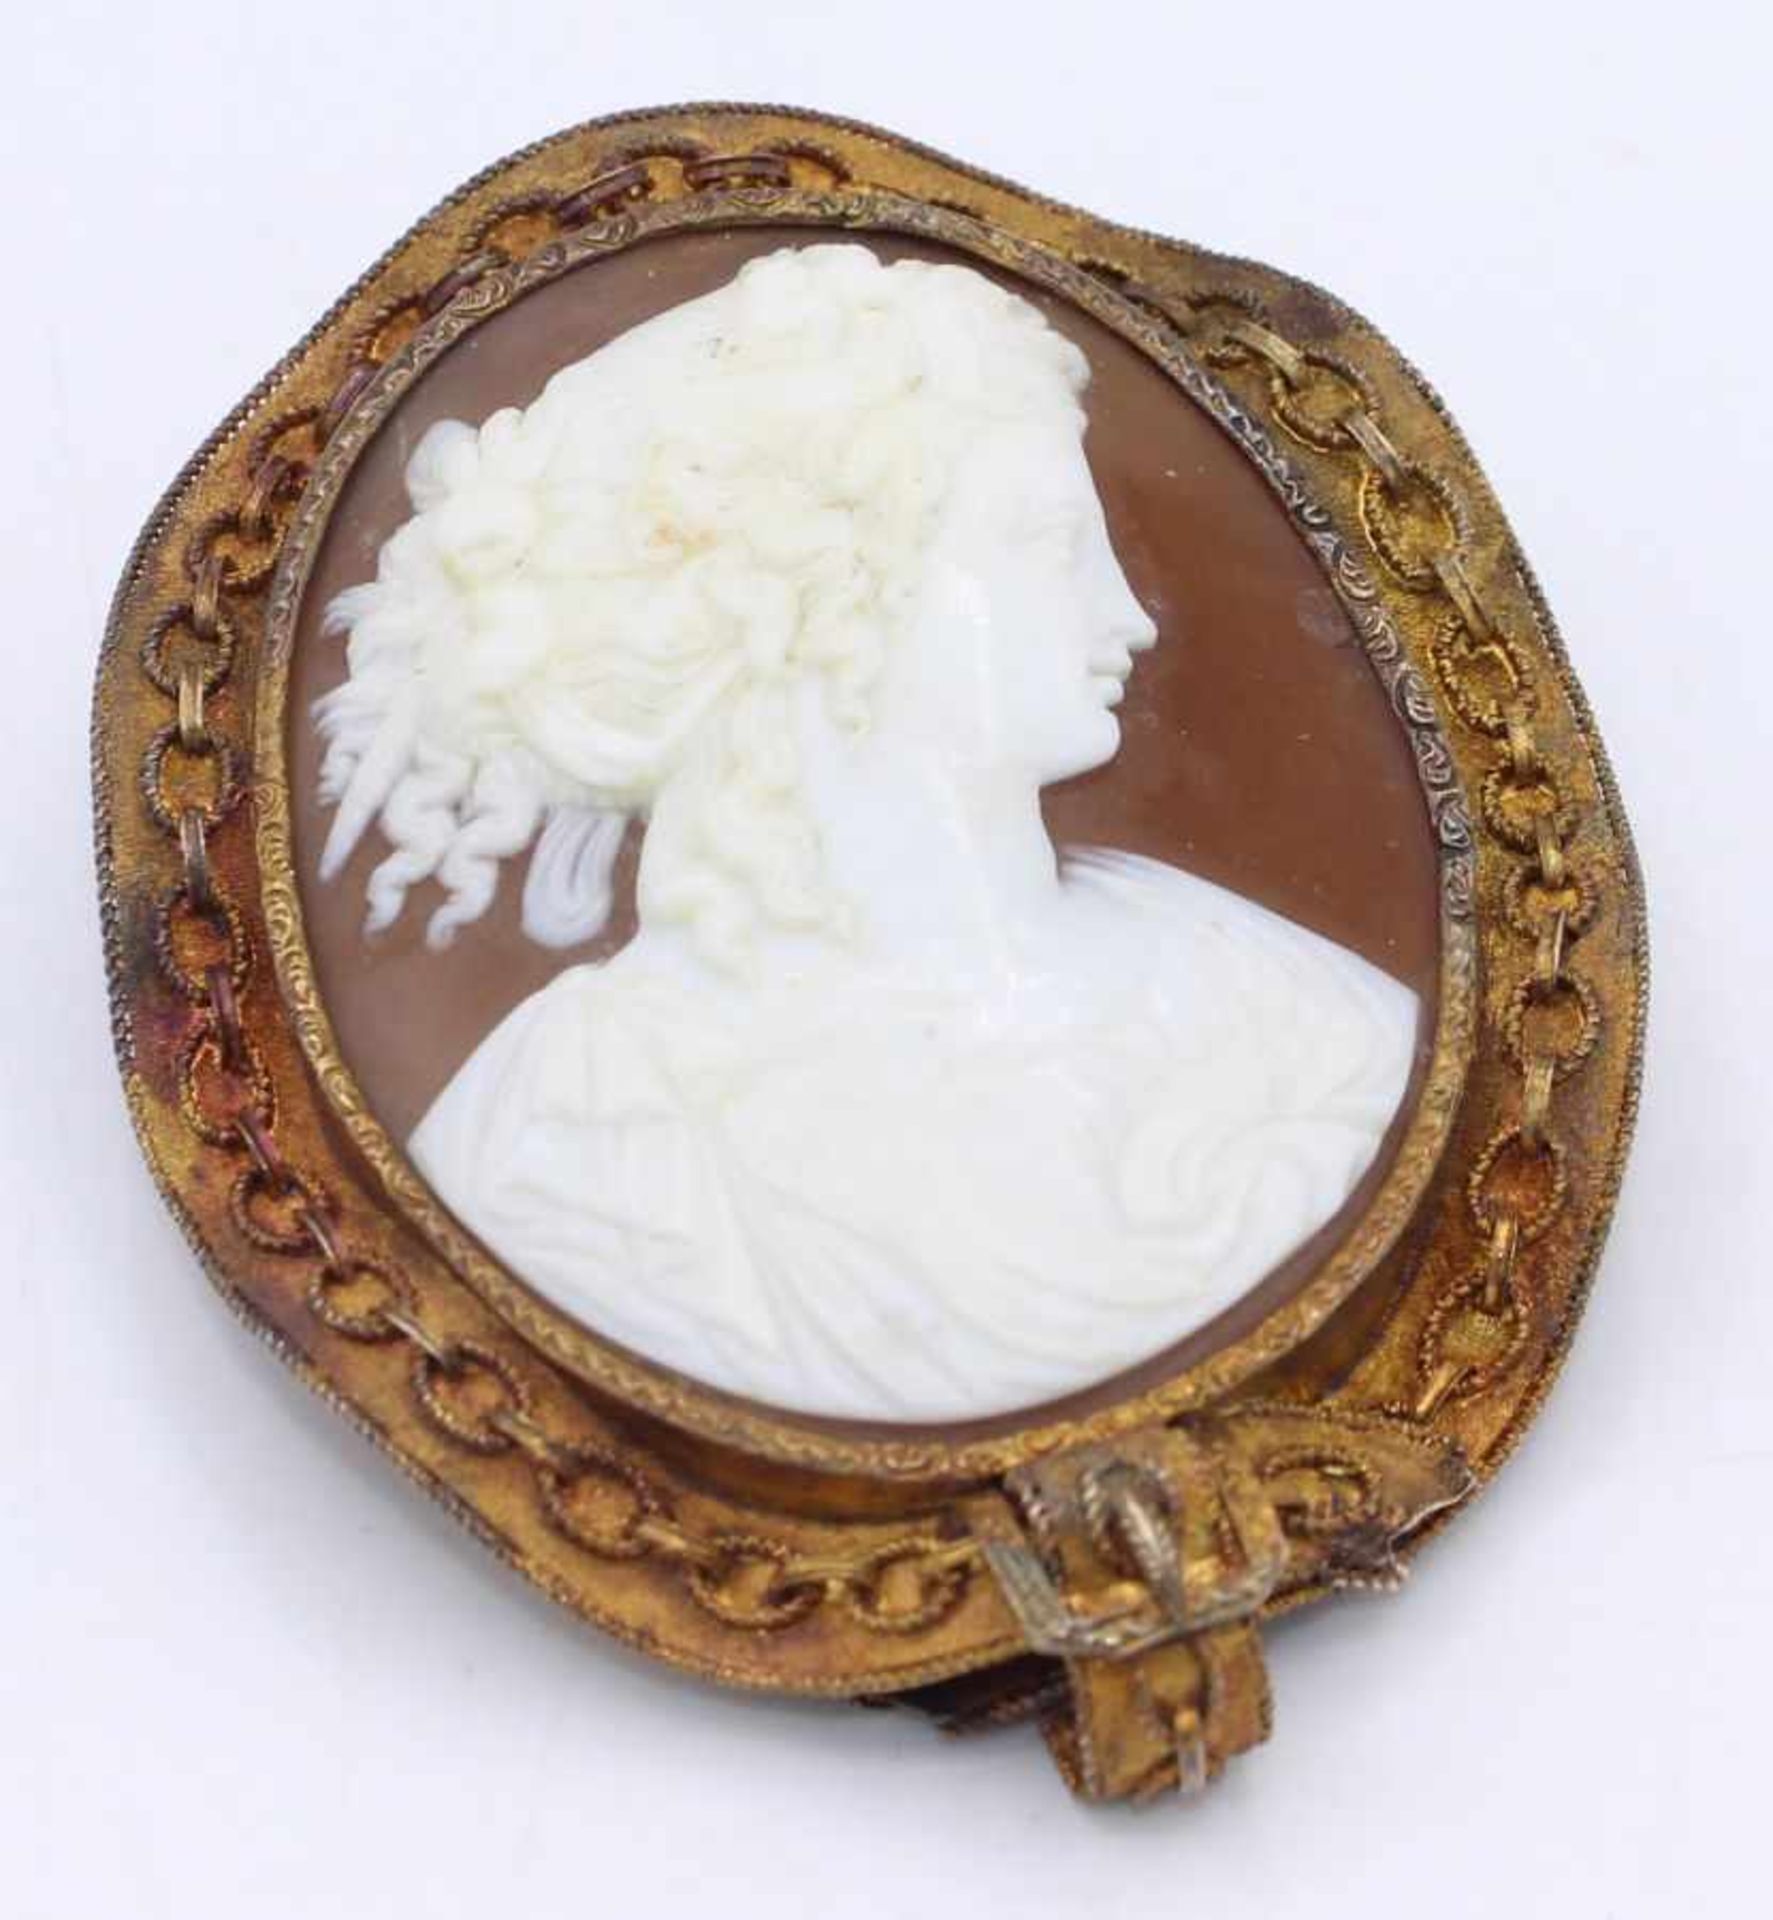 Ovale Gemmenbrosche geschnittene Muschel mit Portrait nach antikem Vorbild, vergoldete gewellte